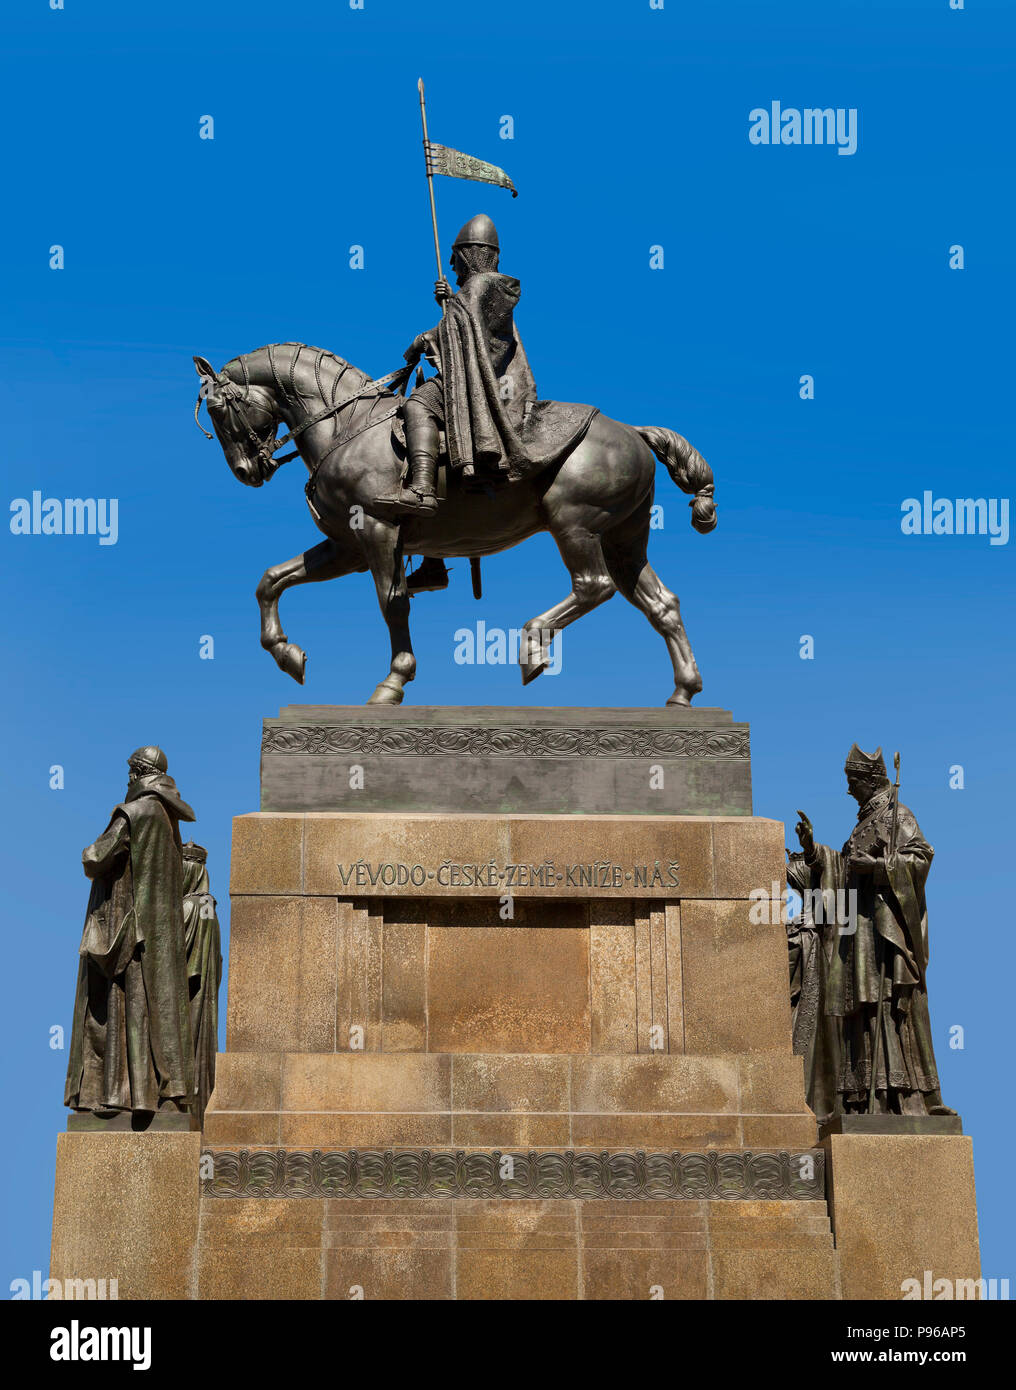 La statue équestre en bronze de Saint-venceslas à la place Venceslas , Prague, République tchèque, grand soleil, ciel bleu Banque D'Images